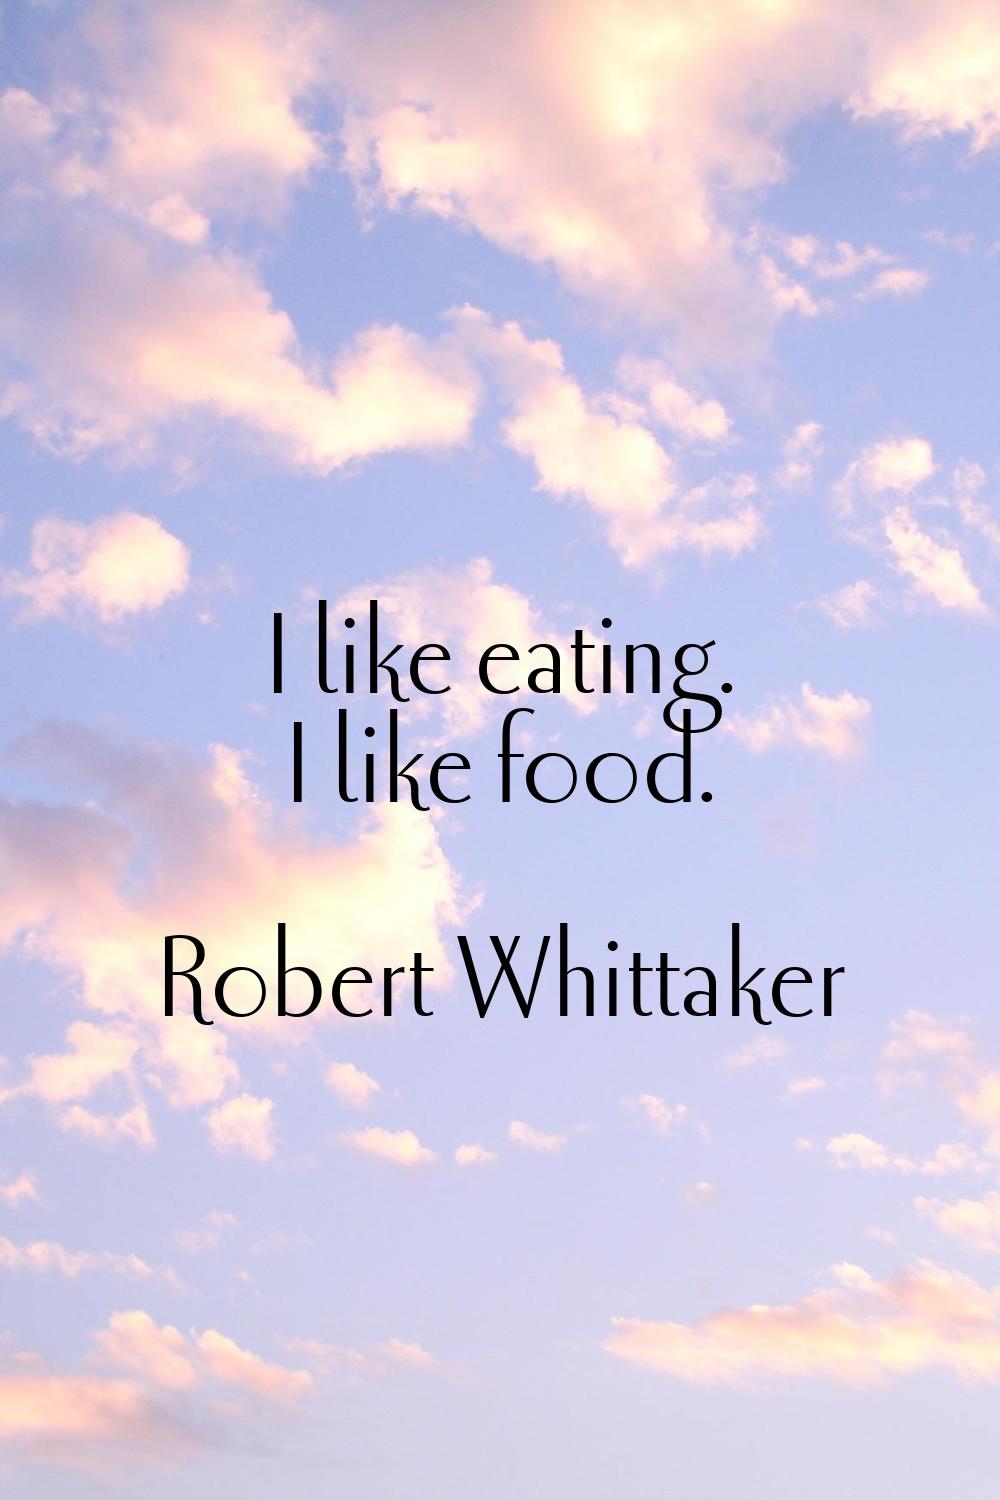 I like eating. I like food.